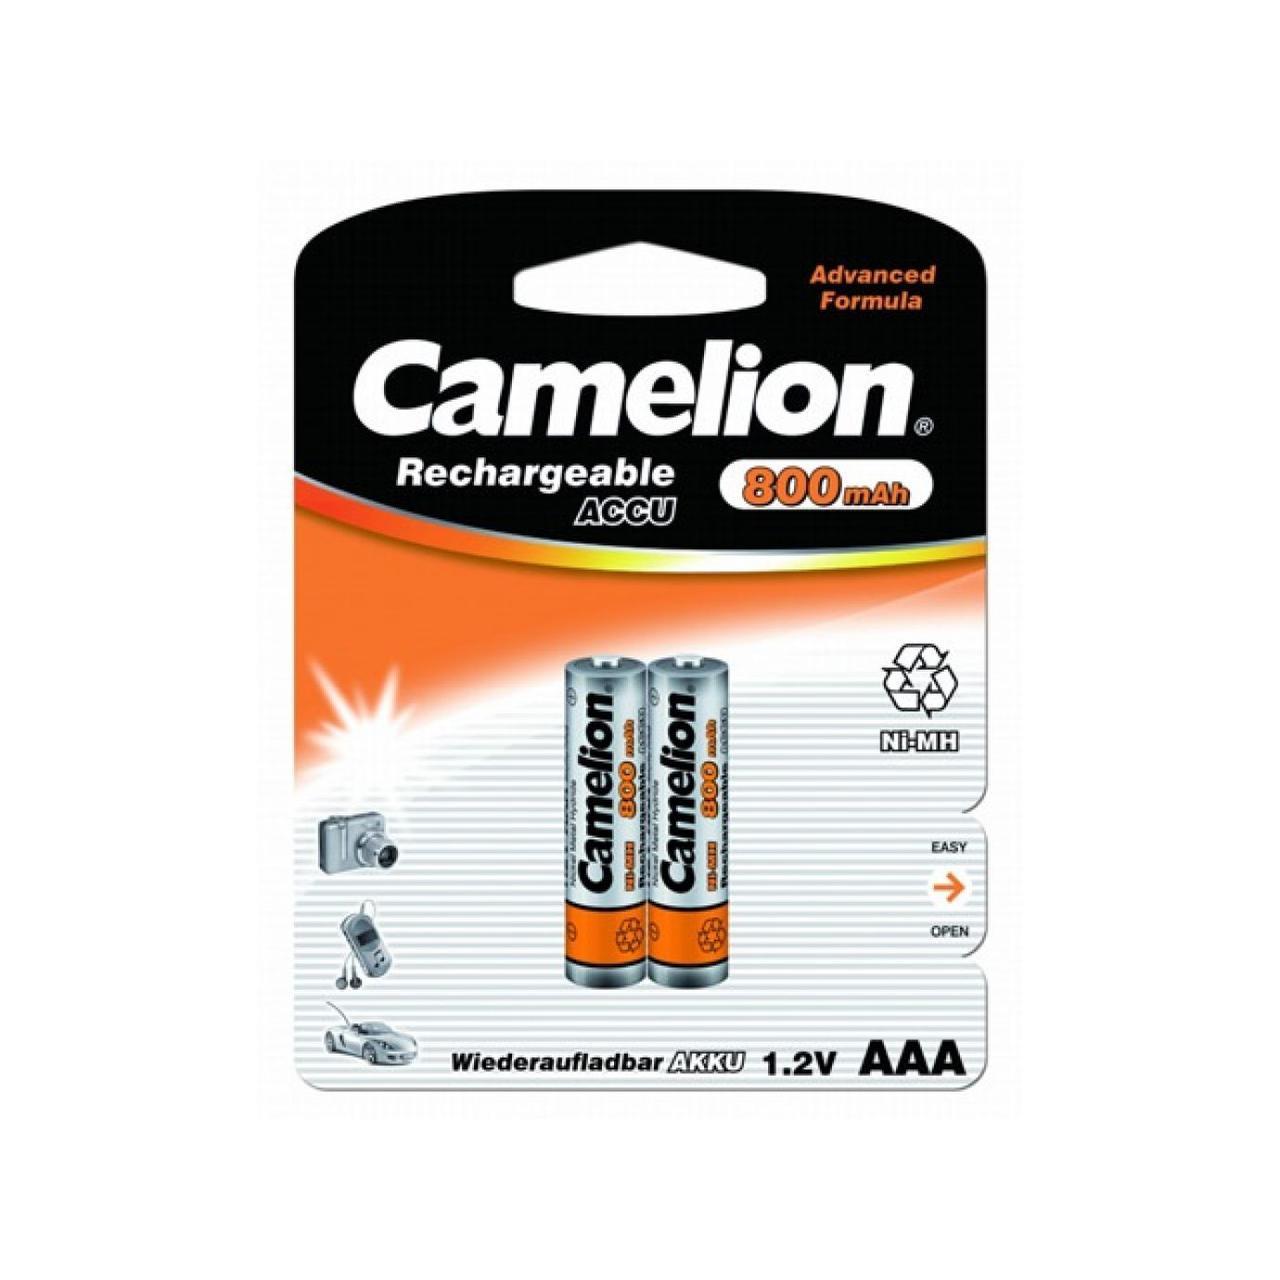 Акумулятори Camelion Ni-Mh (R-03,800 mAh) / блістер 2 шт (12)